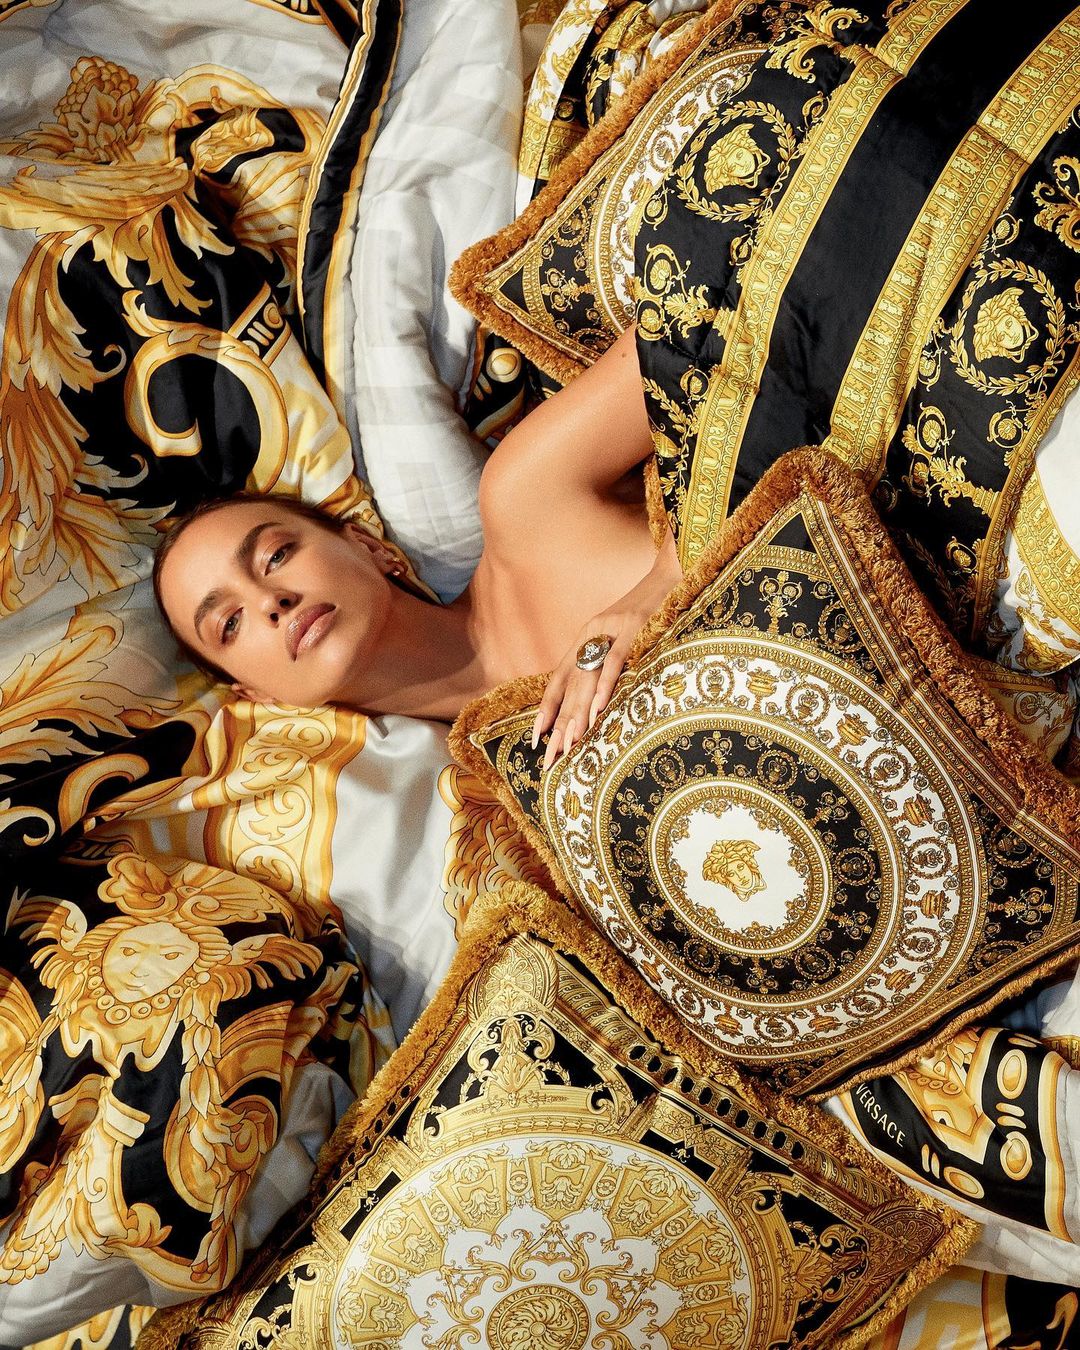 Photos n°9 : Irina Shayk is All Legs for Versace!